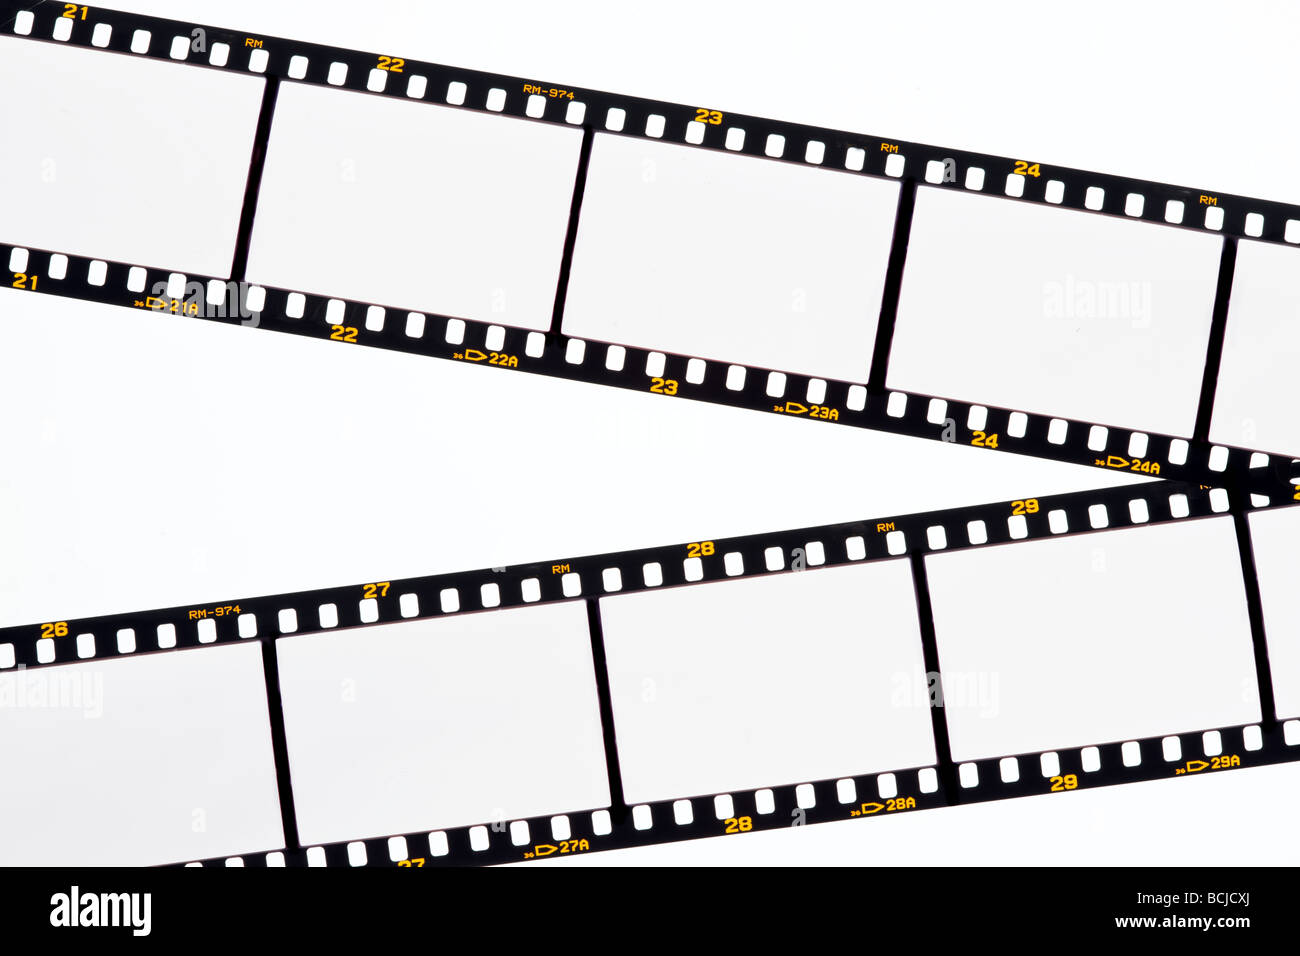 Imágenes En Blanco En Una Película De Diapositiva Fotografía De Stock Alamy 2810